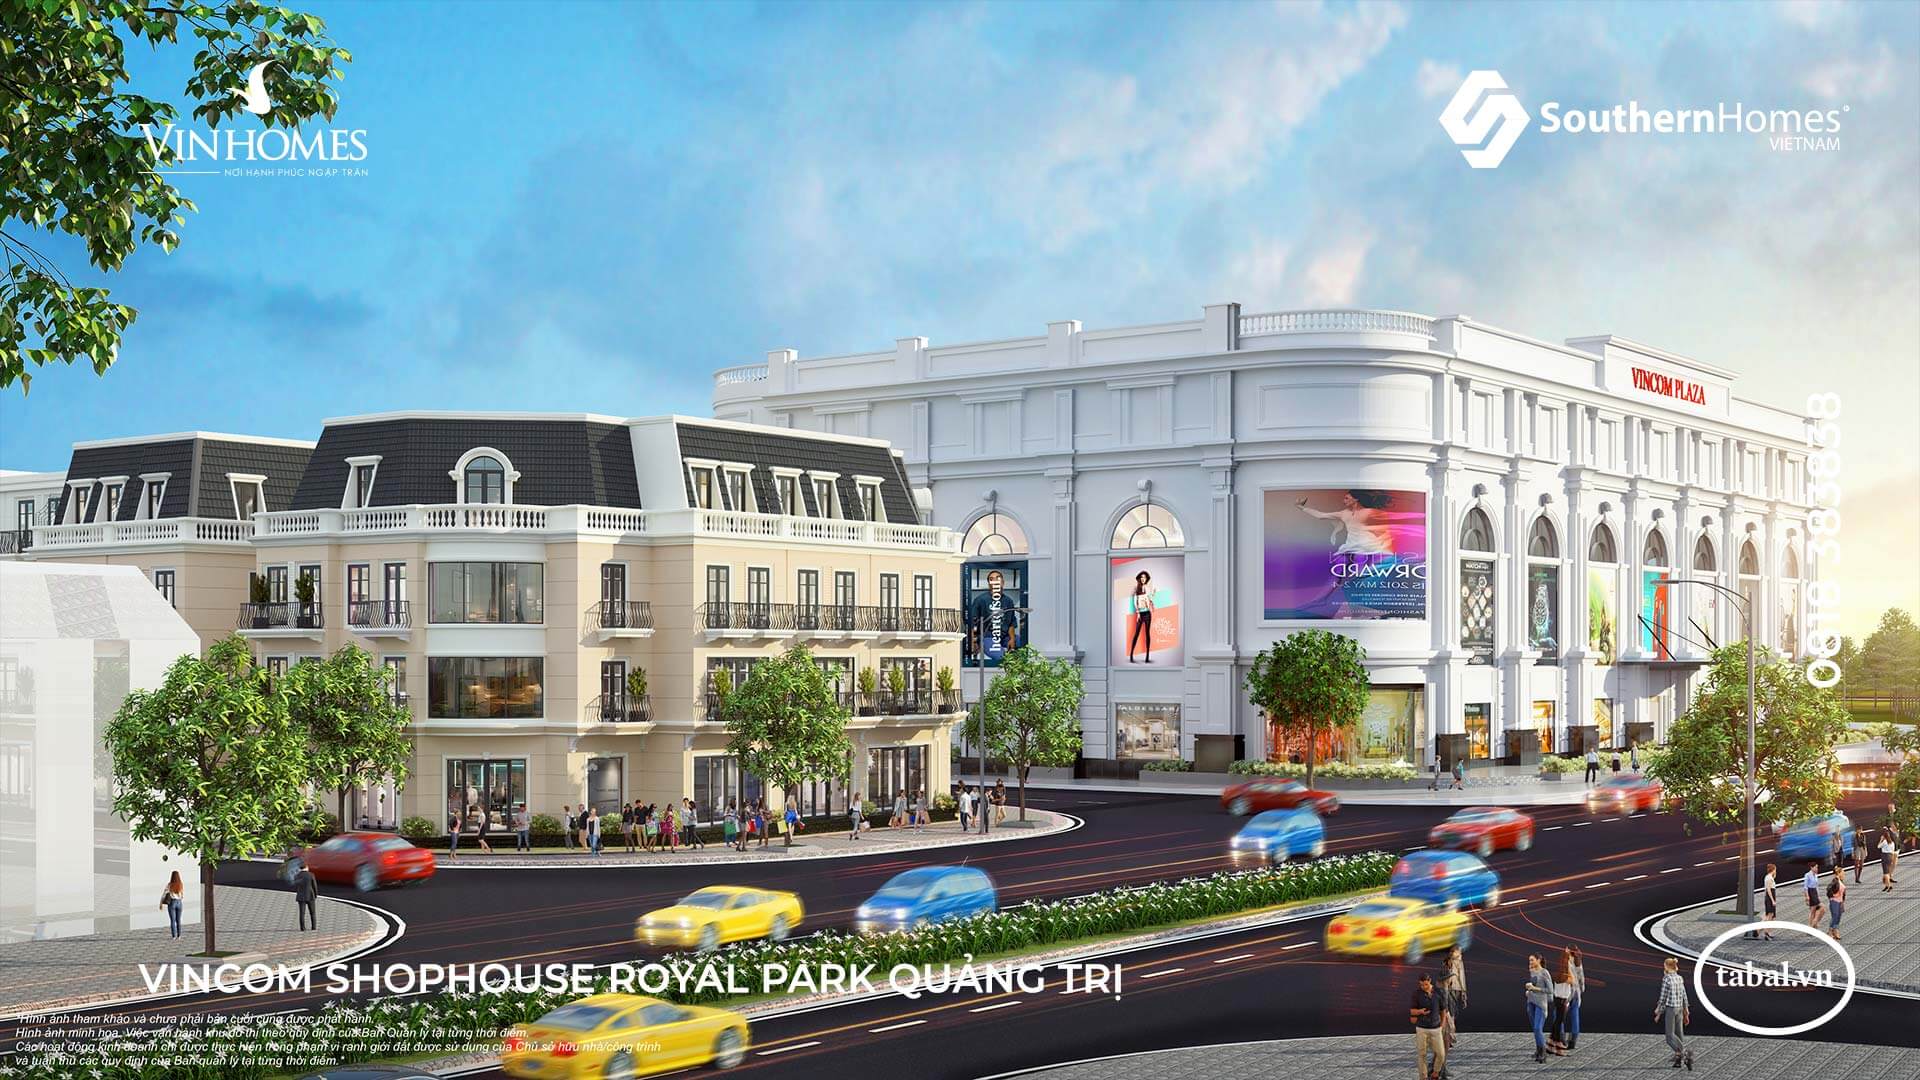 Vincom Shophouse Royal Park - Tổ hợp TTTM, nhà phố thương mại liền kề là dự án có tầm cỡ và quy mô đầu tiên tại Quảng Trị.